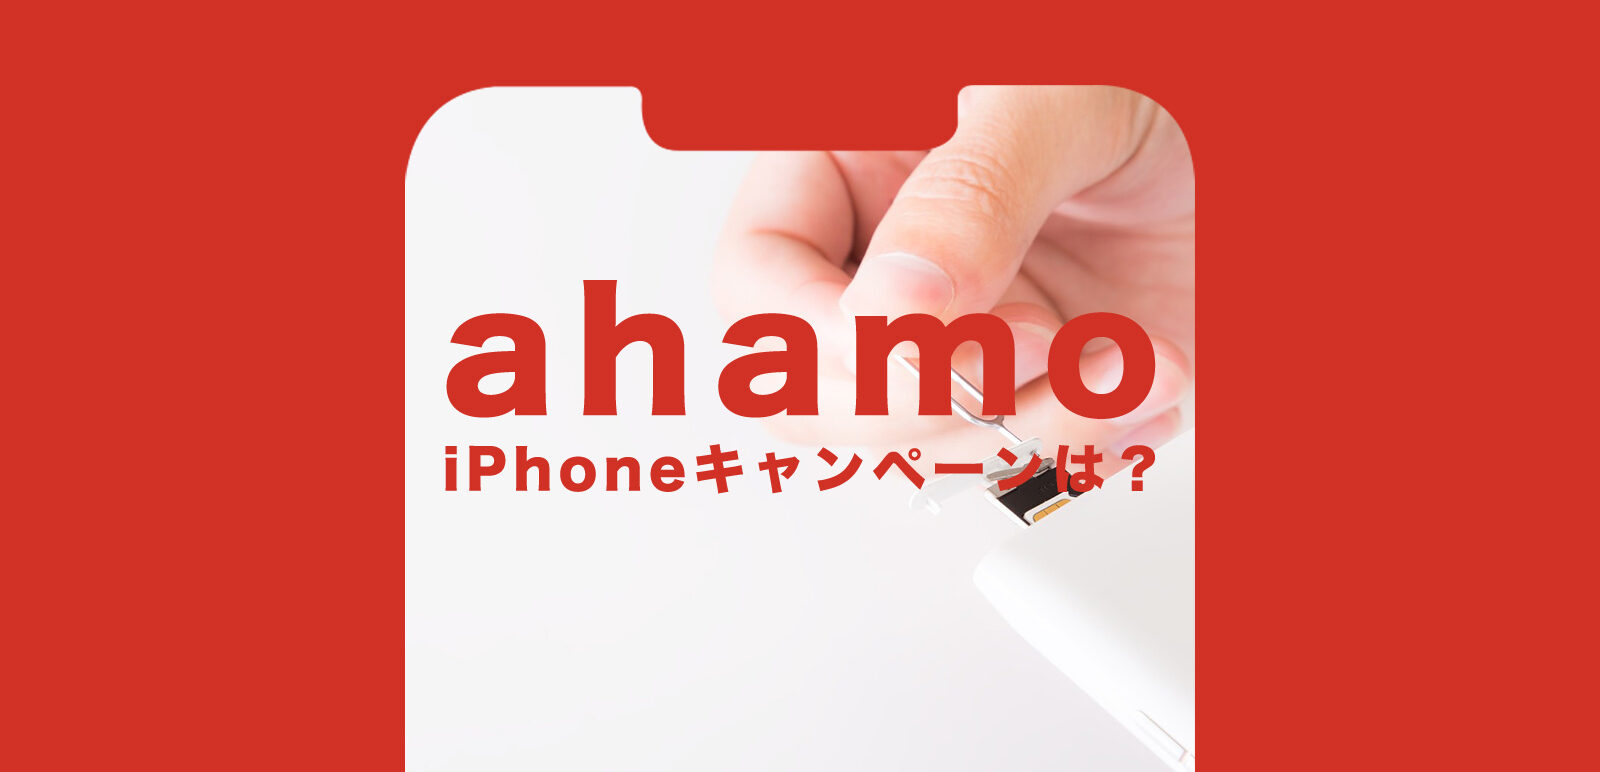 ahamo(アハモ)のキャンペーンでiPhone11やSE2(第2世代)が安くなるものはある？のサムネイル画像